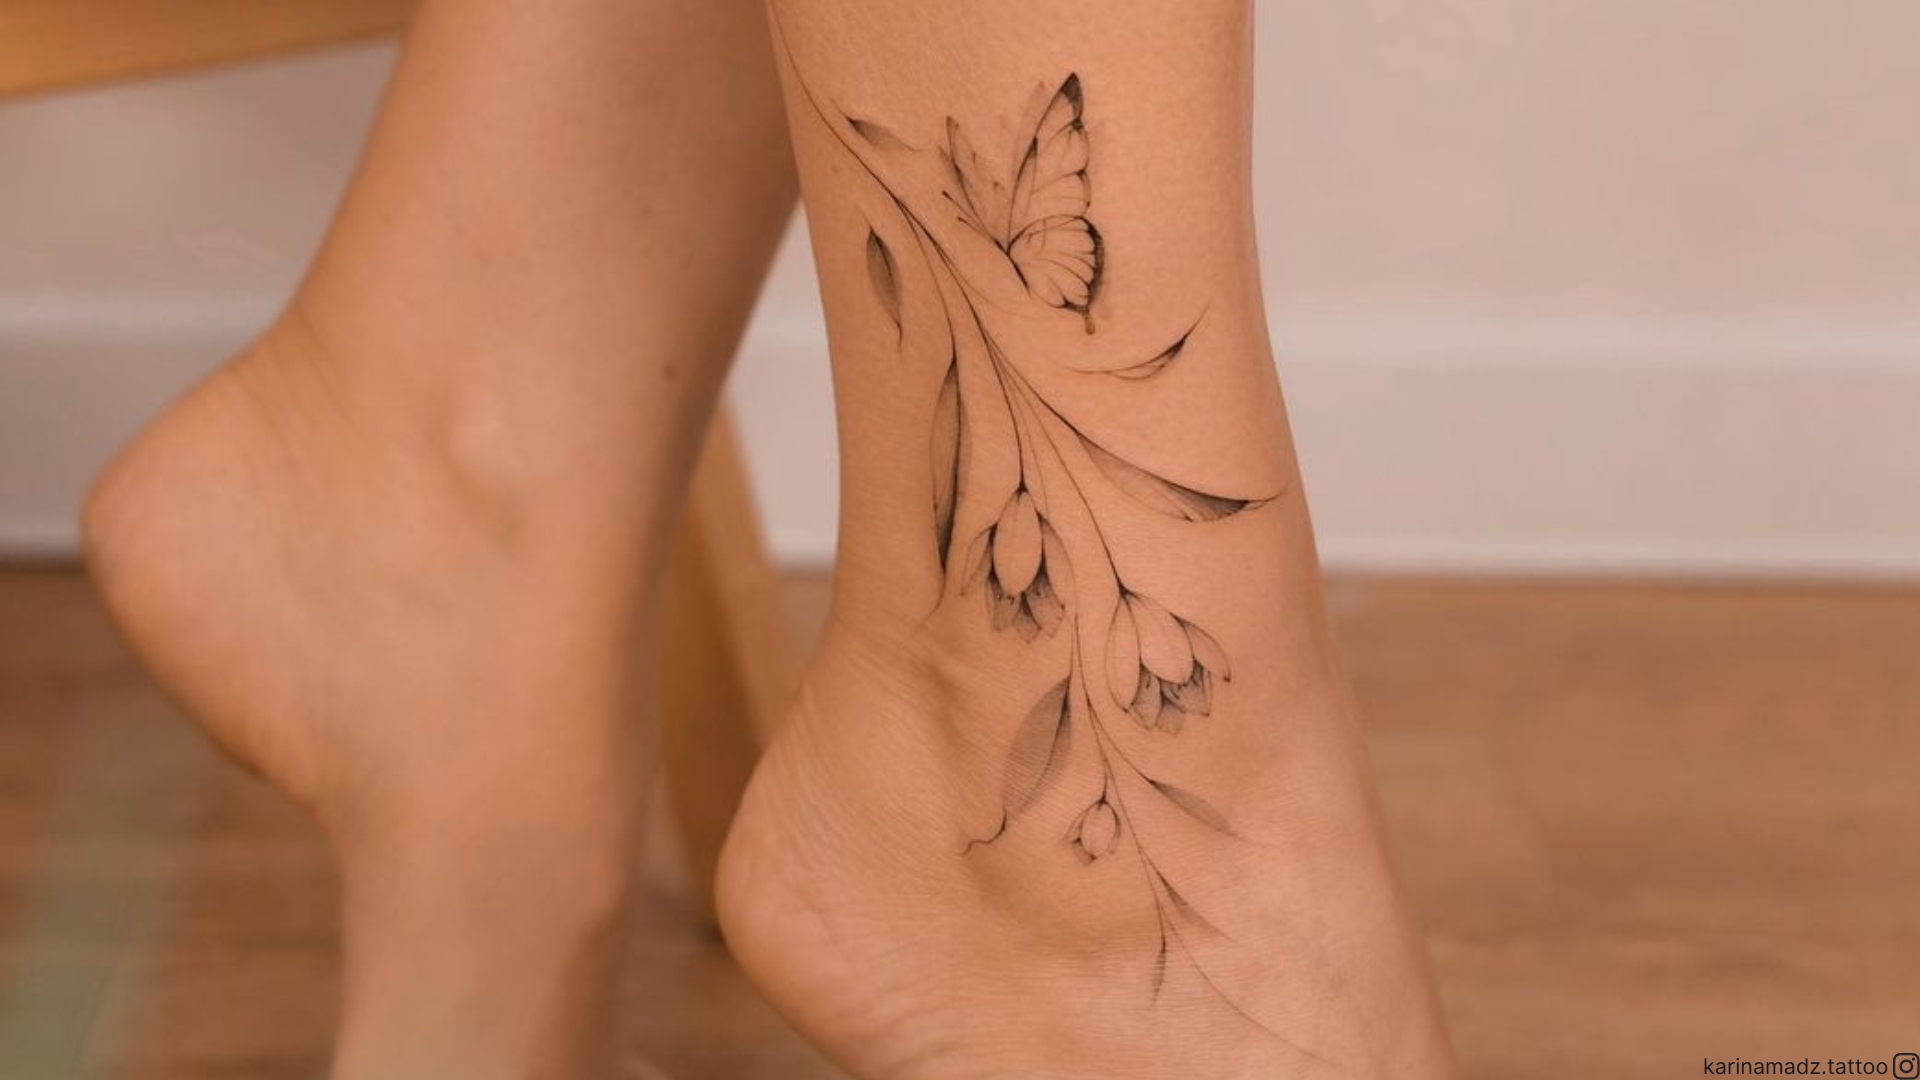 idee per tatuaggi sulle gambe per donna